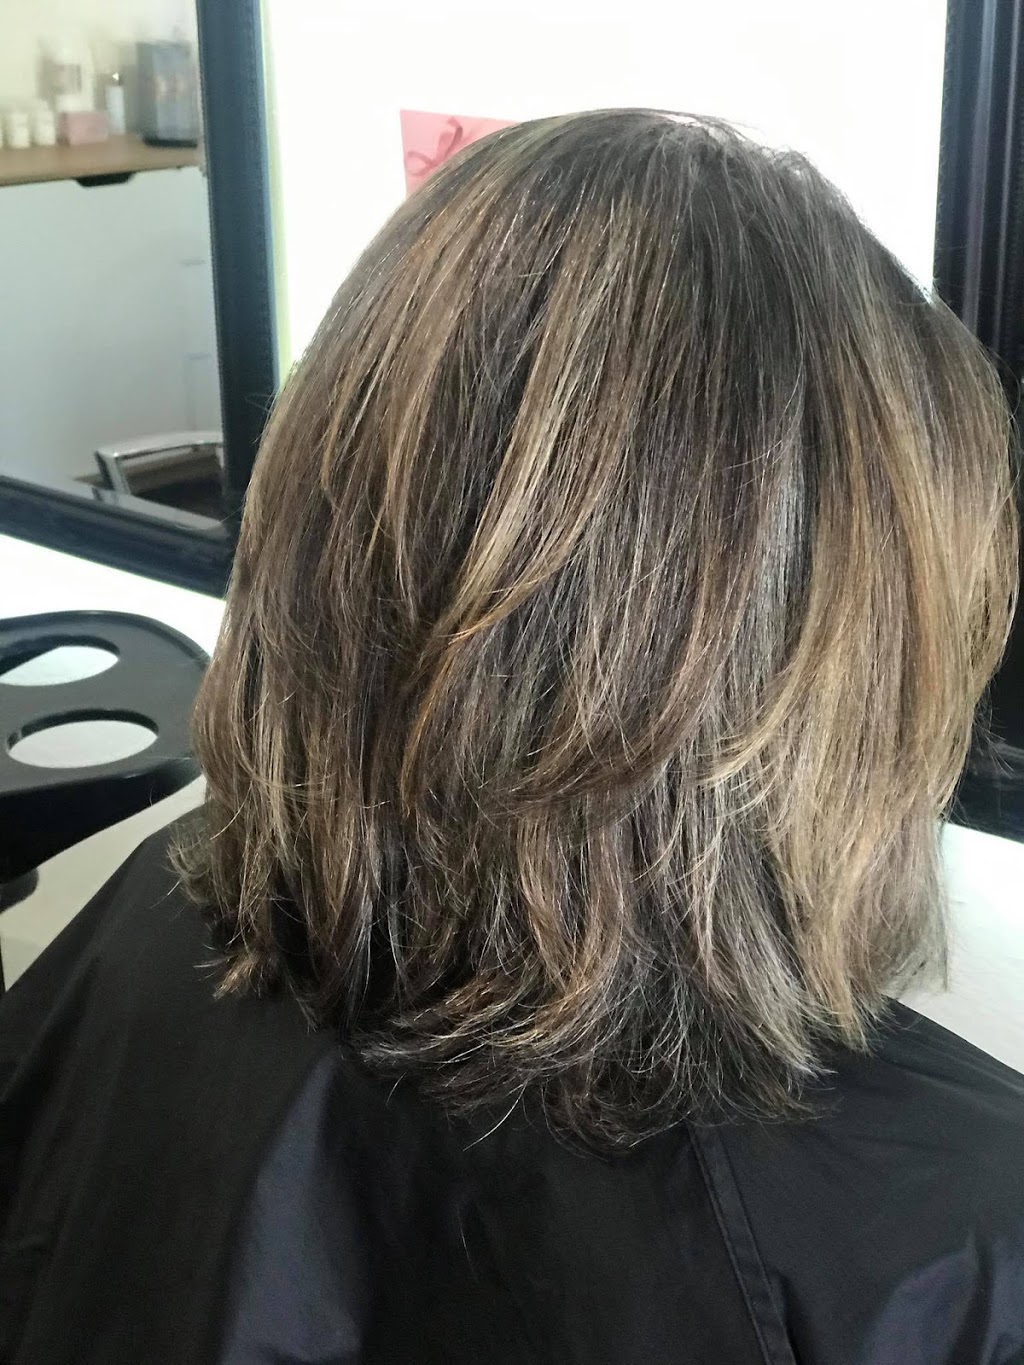 Celtic Cuts & Color | hair care | 11 Magnolia Ct, Cowaramup WA 6284, Australia | 0448861438 OR +61 448 861 438